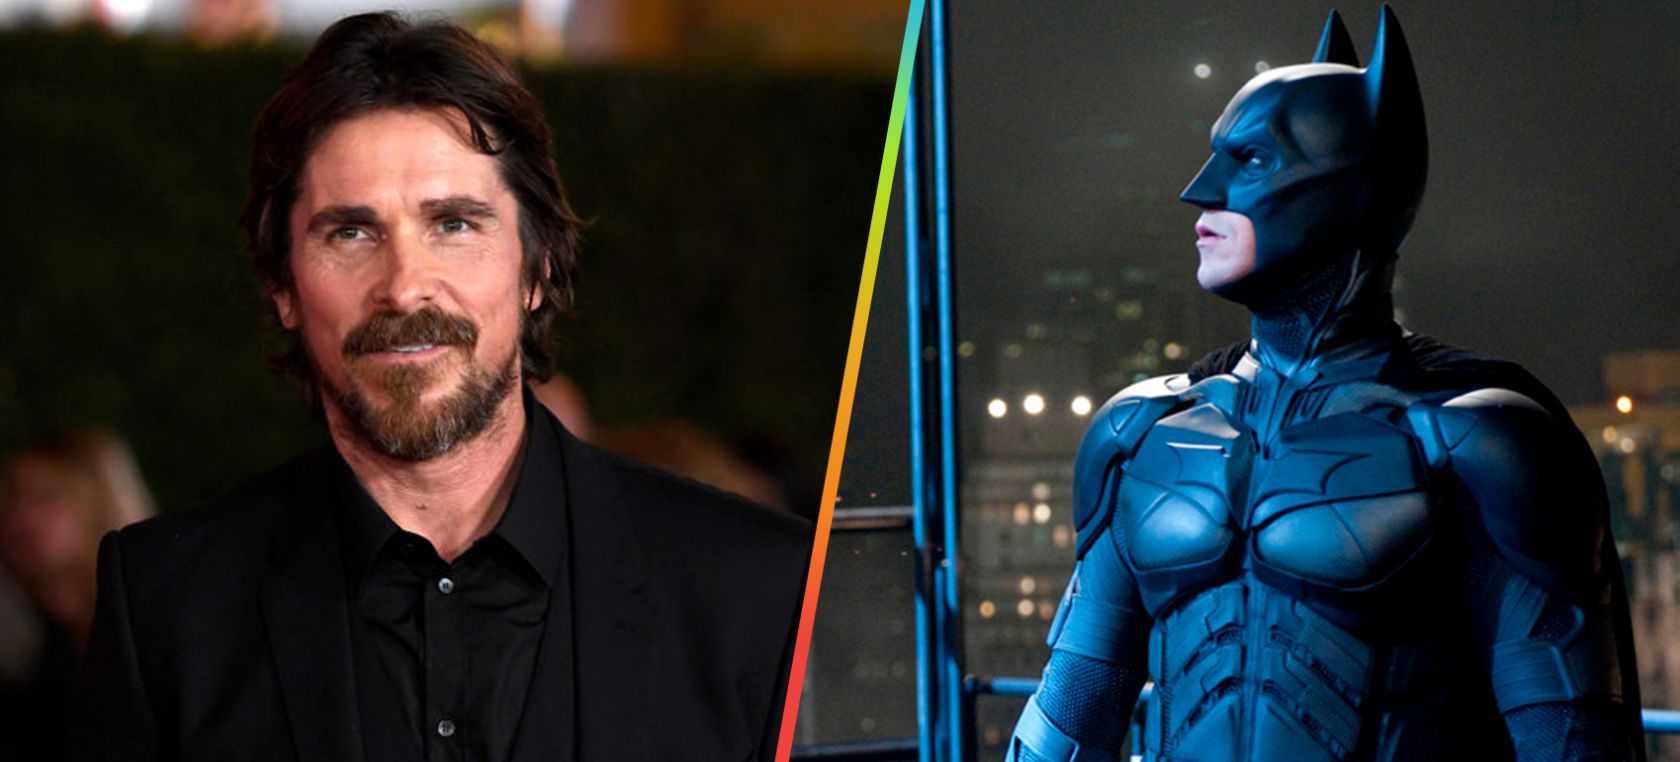 Christian Bale: Christian Bale podría convertirse en Batman una vez más |  Cine y Televisión | LOS40 México